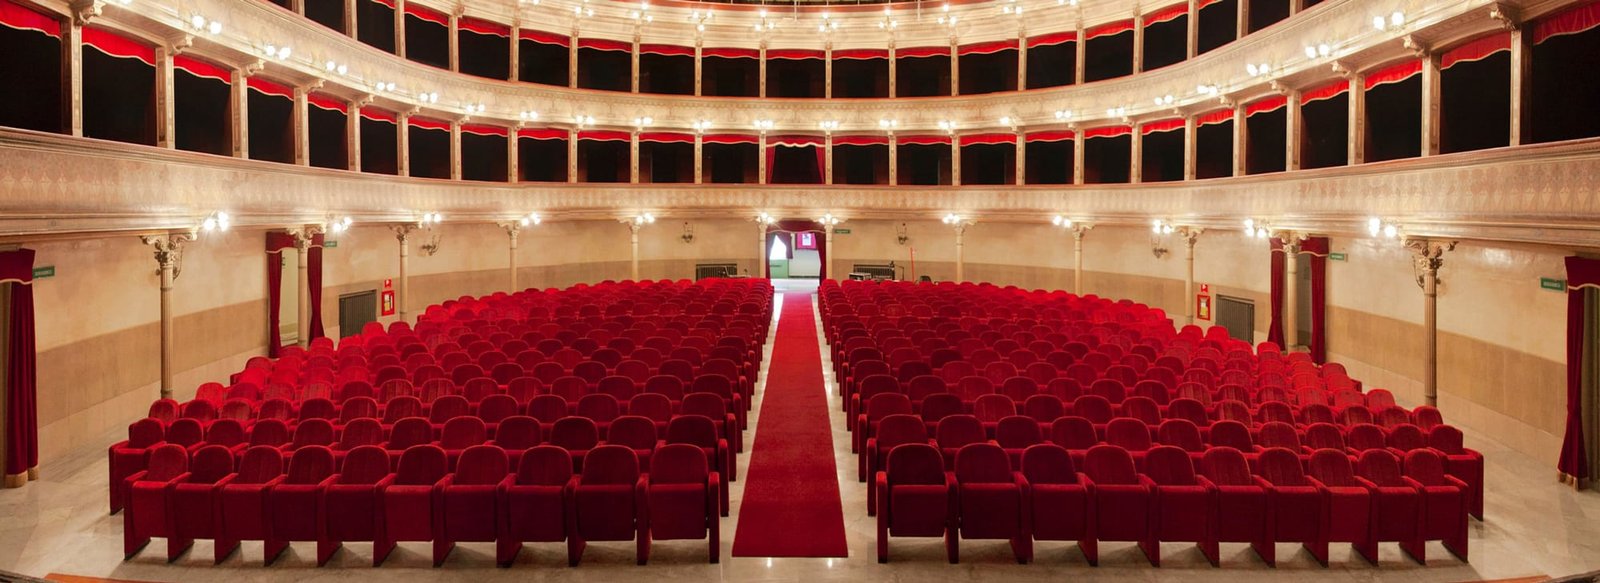 Teatro Biondo di Palermo, con poltrone K1000 LCF